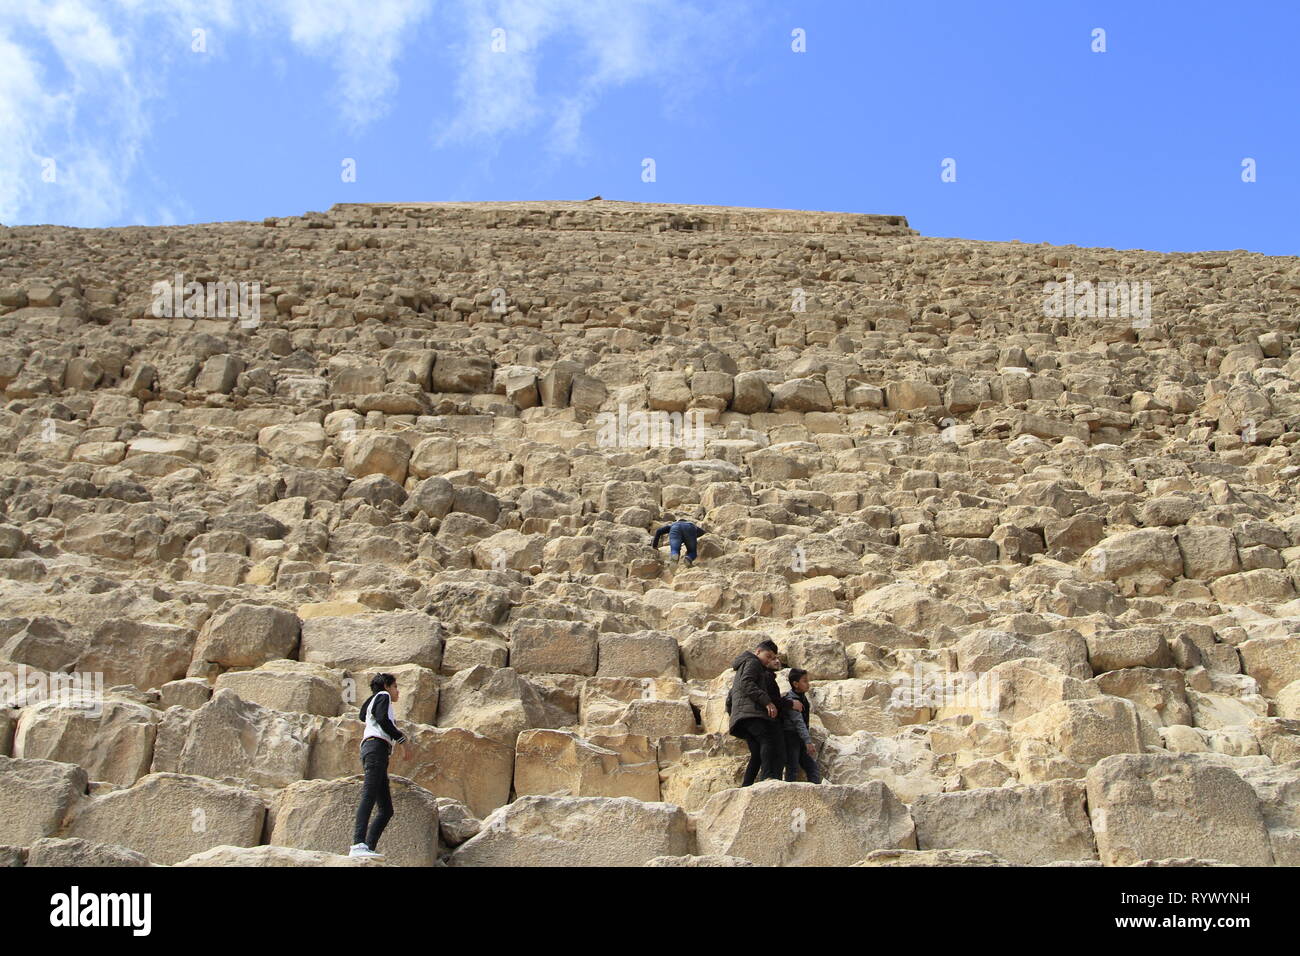 Escalade pour les enfants la pyramide de Khafré malgré l'absence de signes d'escalade sur la première rangée de blocs, complexe Pyramide de Gizeh, Le Caire, Egypte Banque D'Images